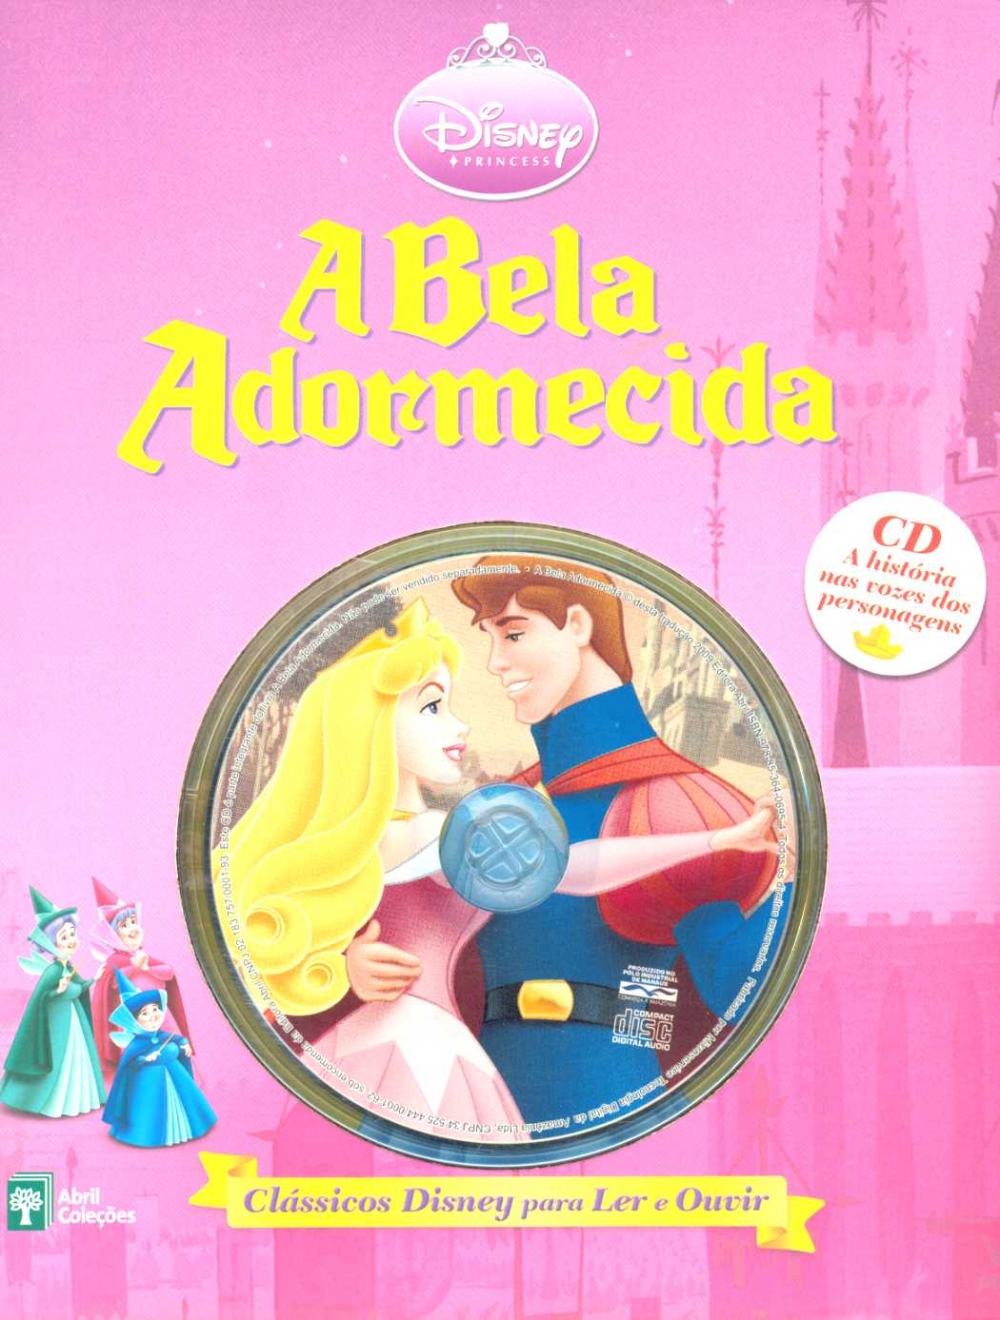 Princesa Aurora, a Bela Adormecida com Malévola, Principe Philip e Fadinhas  Coleção Disney Histórias 